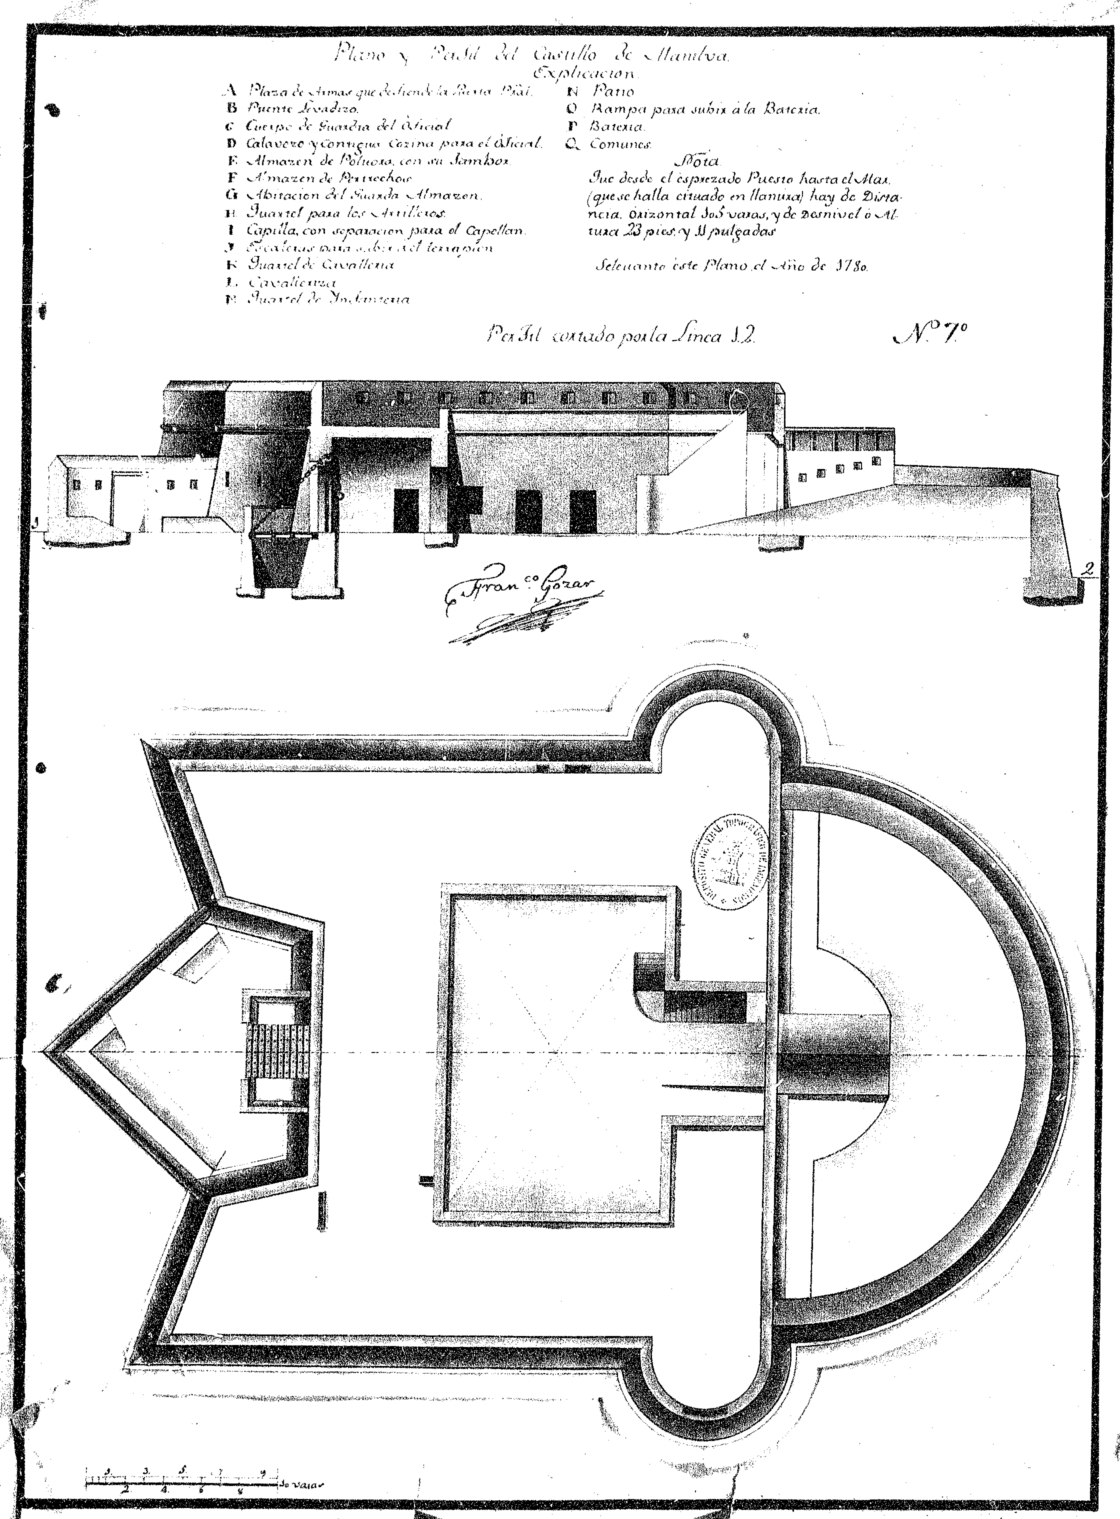 Plano y perfil del Castillo de Manilva, conocido como el Castillo de la Duquesa. 1780